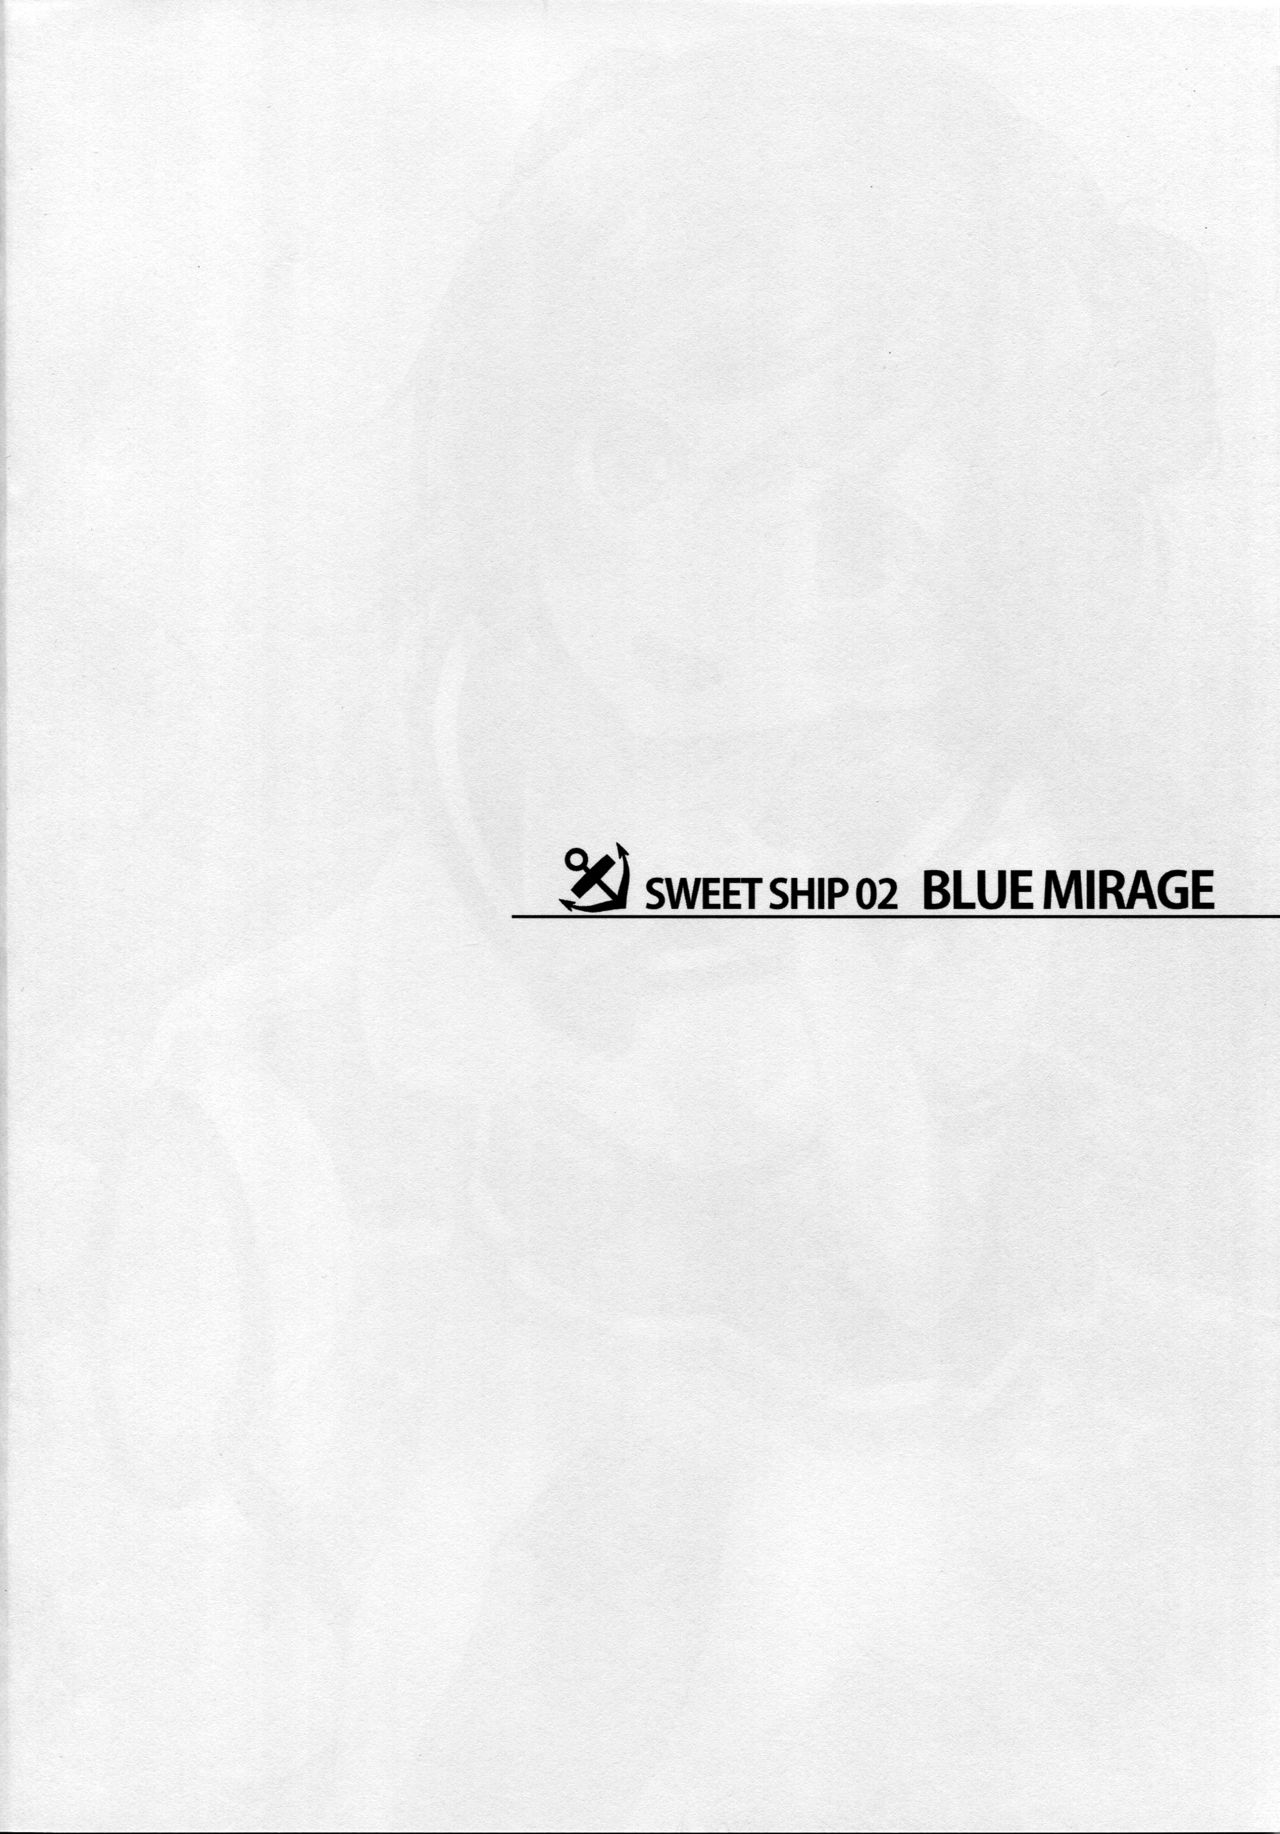 SWEET SHIP 02 BLUE MIRAGE